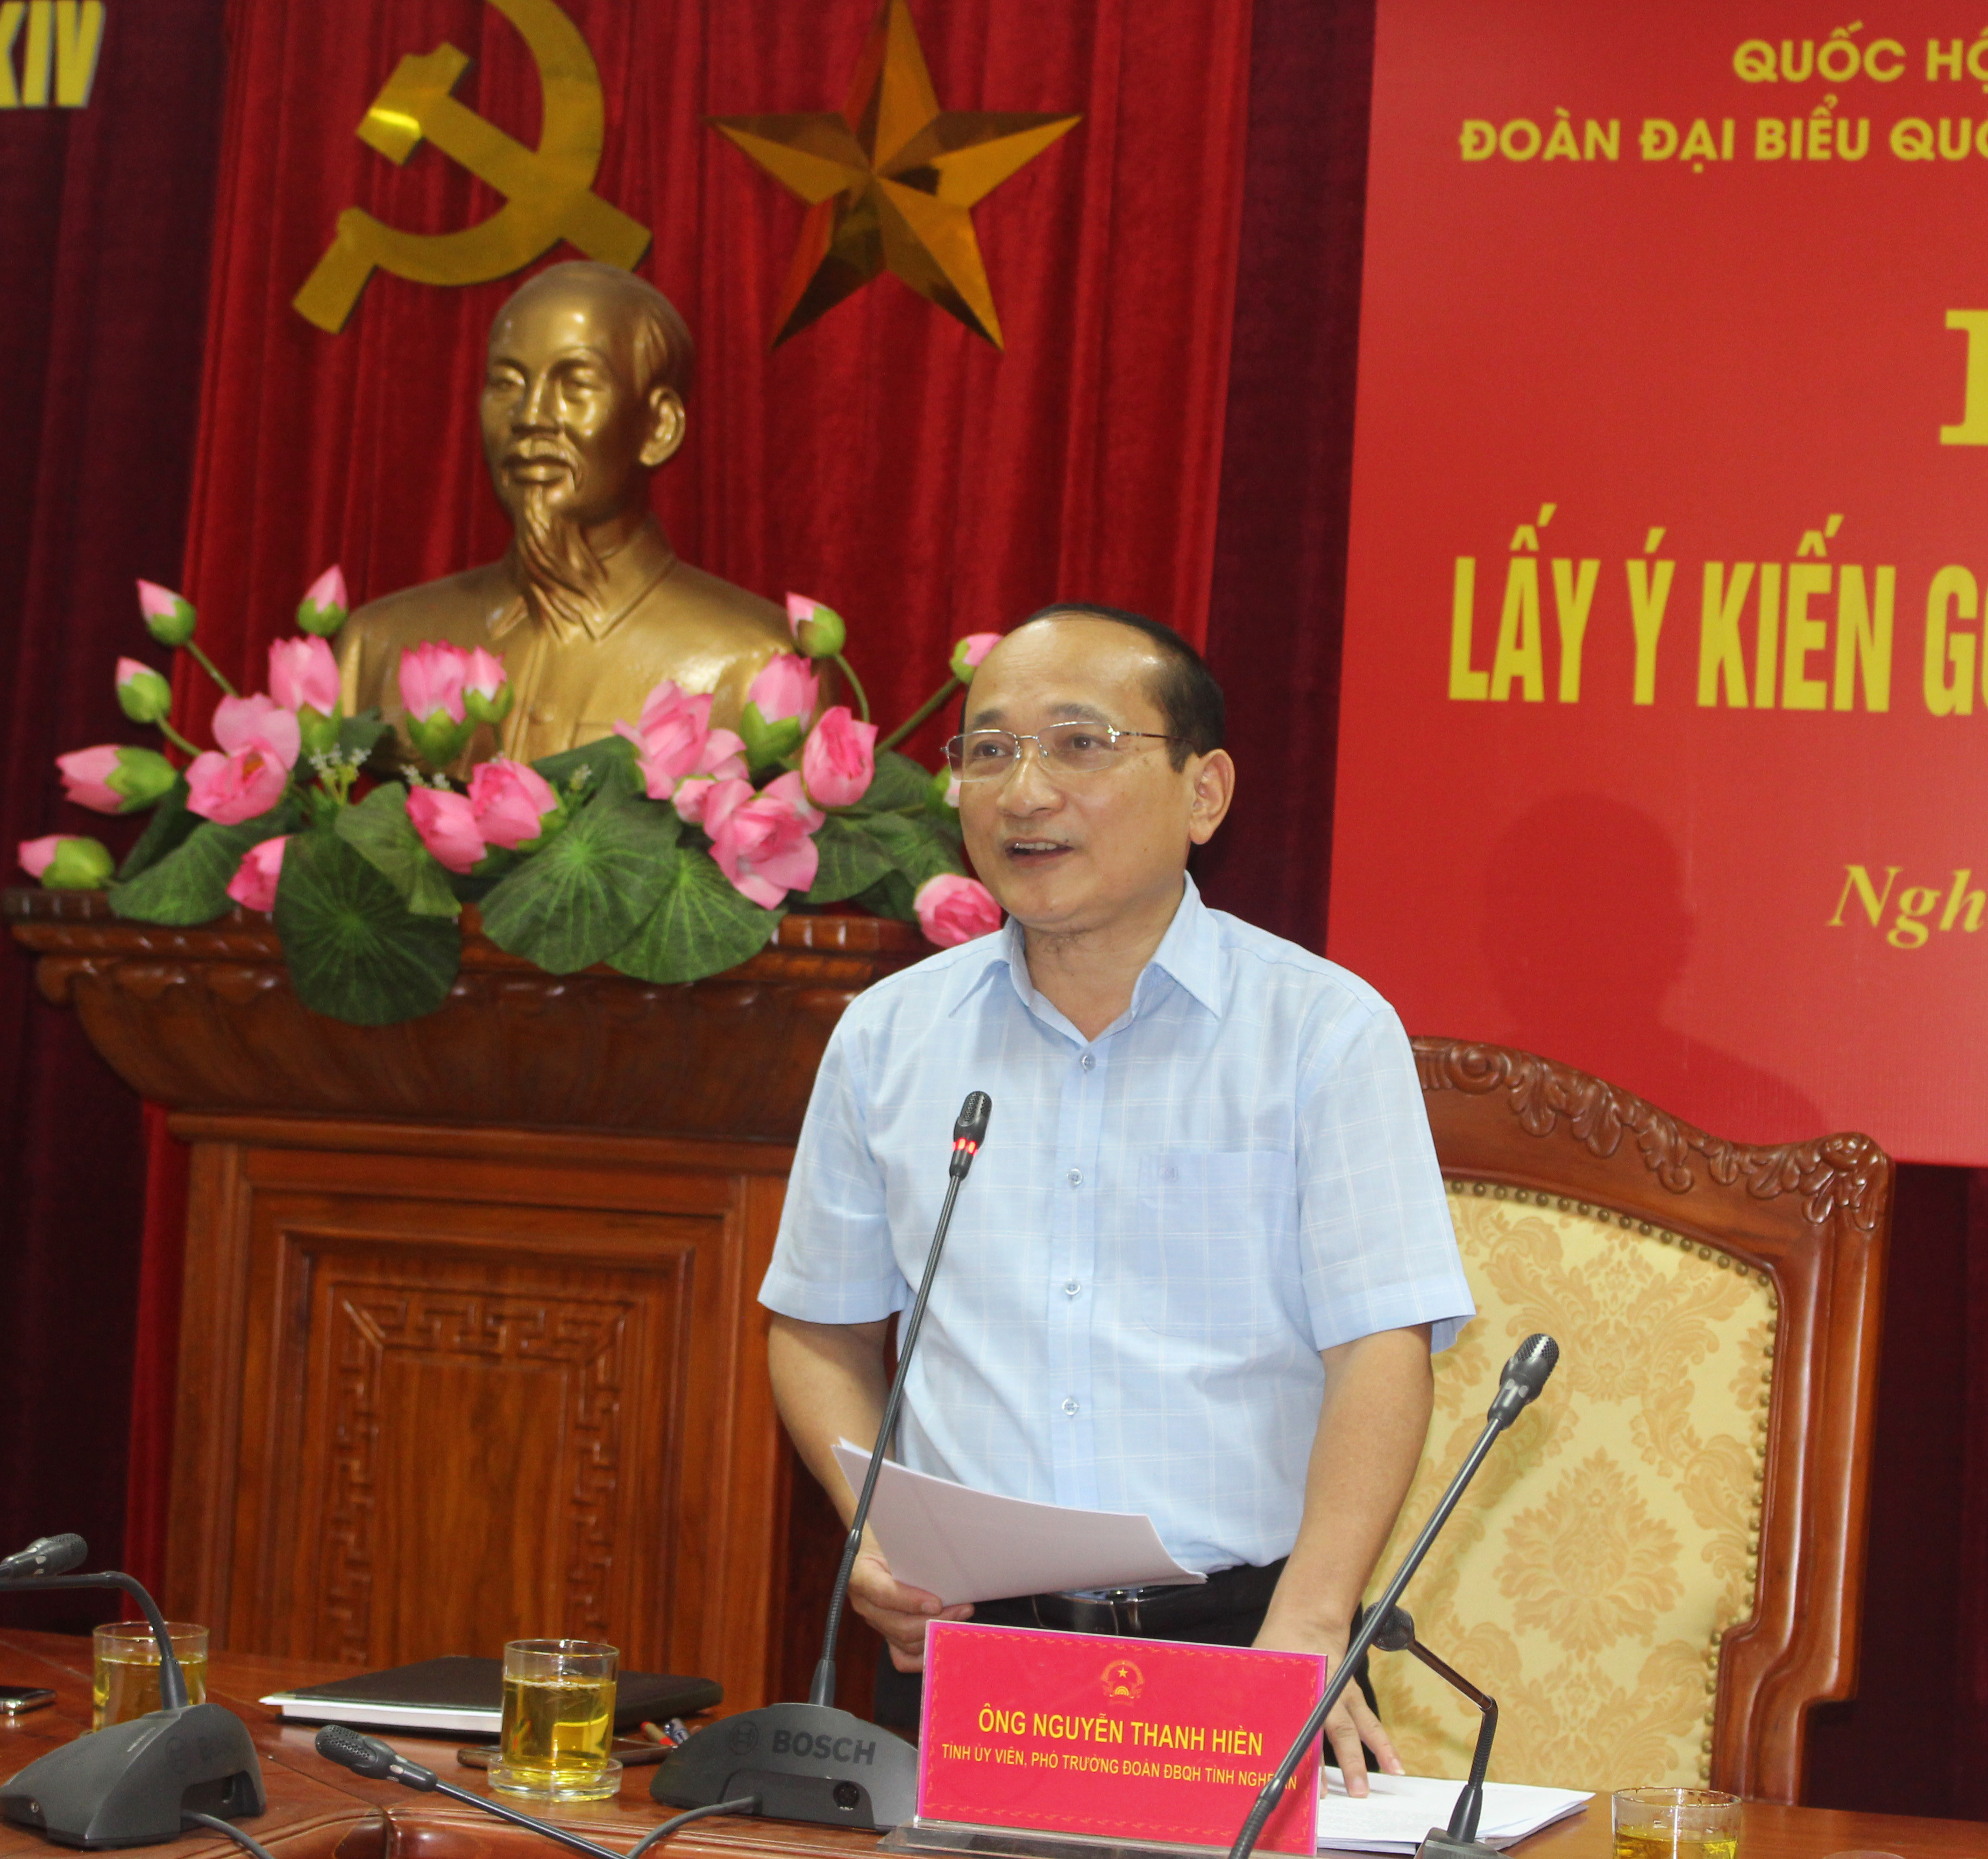 Đồng chí Nguyễn Thanh Hiền - Ủy viên BCH Đảng bộ tỉnh, Phó trưởng đoàn đại biểu Quốc hội tỉnh ghi nhận những ý kiến góp ý dự thảo Luật của các đại biểu. Ảnh: Phương Thảo